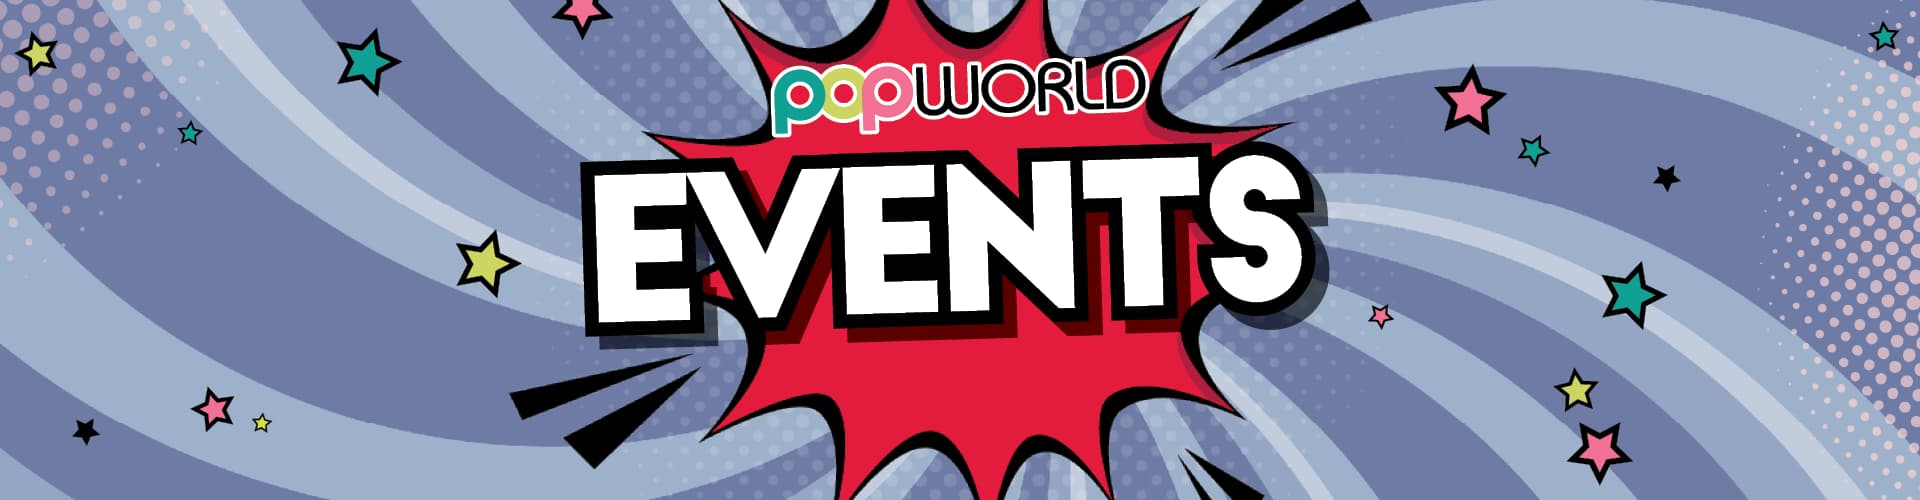 Events at Popworld Hertford